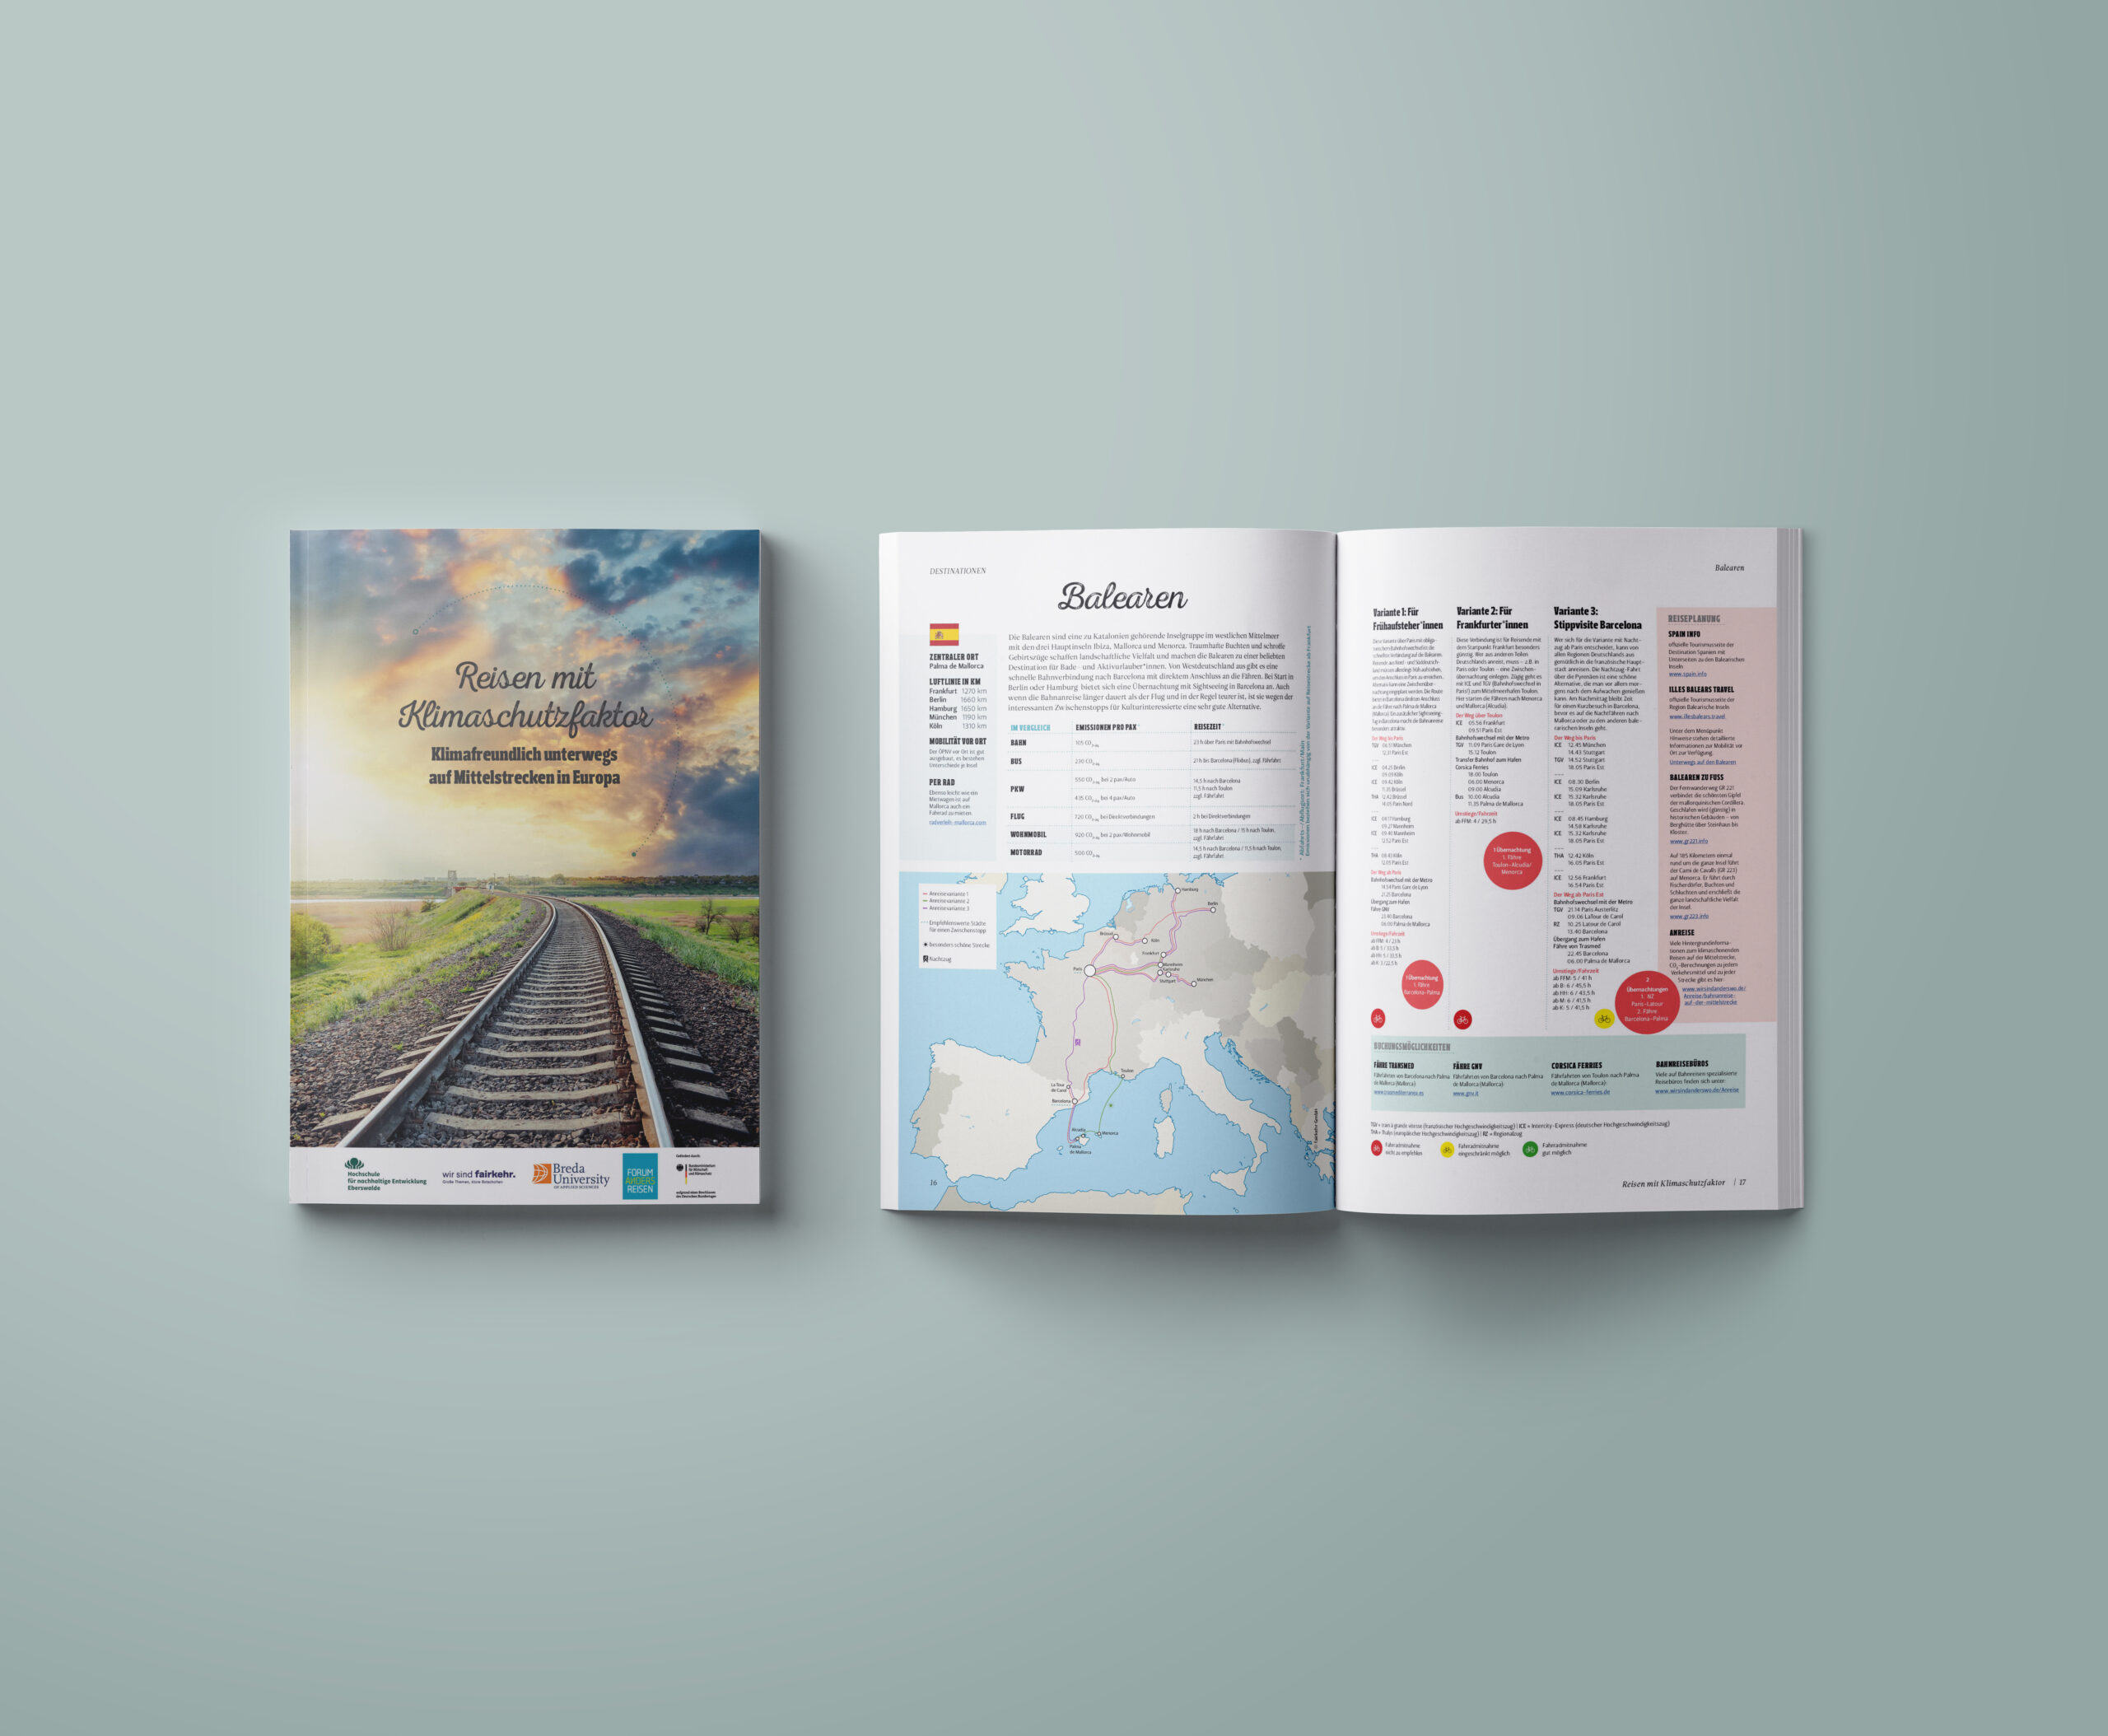 Handbuch "Klimaschonend Reisen auf der Mittelstrecke"